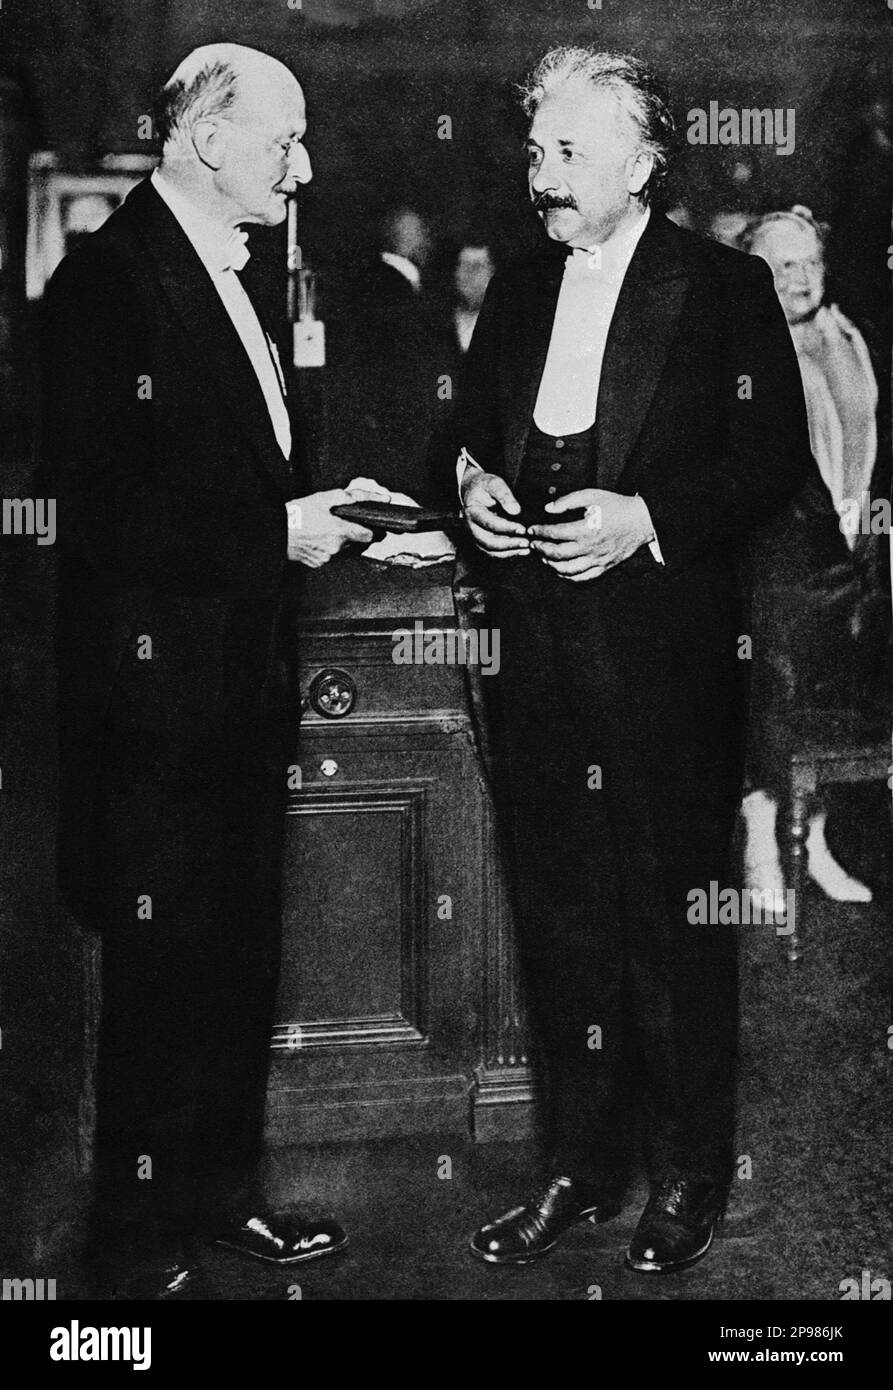 1929 , Juni 28 , Berlin , Deutschland : der deutsche Physiker ALBERT EINSTEIN ( 1879 - 1955 ) , Nobelpreisträger 1921 . Auf diesem Foto mit dem deutschen Physiker MAX PLANCK (1858 - 1947 ) wird er als Begründer der Quantentheorie und damit als einer der wichtigsten Physiker des 20 . Jahrhunderts angesehen , der 1918 den Nobelpreis erhielt . Geben Sie auf diesem Foto die mit der max-Planck-Medaille an Einstein - foto Storiche - foto storica - scienziato - Wissenschaftler - Portrait - ritratto - Physik - FISICA - FISICO - SCIENZA - SCIENCE - Baffi - Schnurrbart - PREMIO NOBEL PER LA FISICA - Atomica - AT Stockfoto